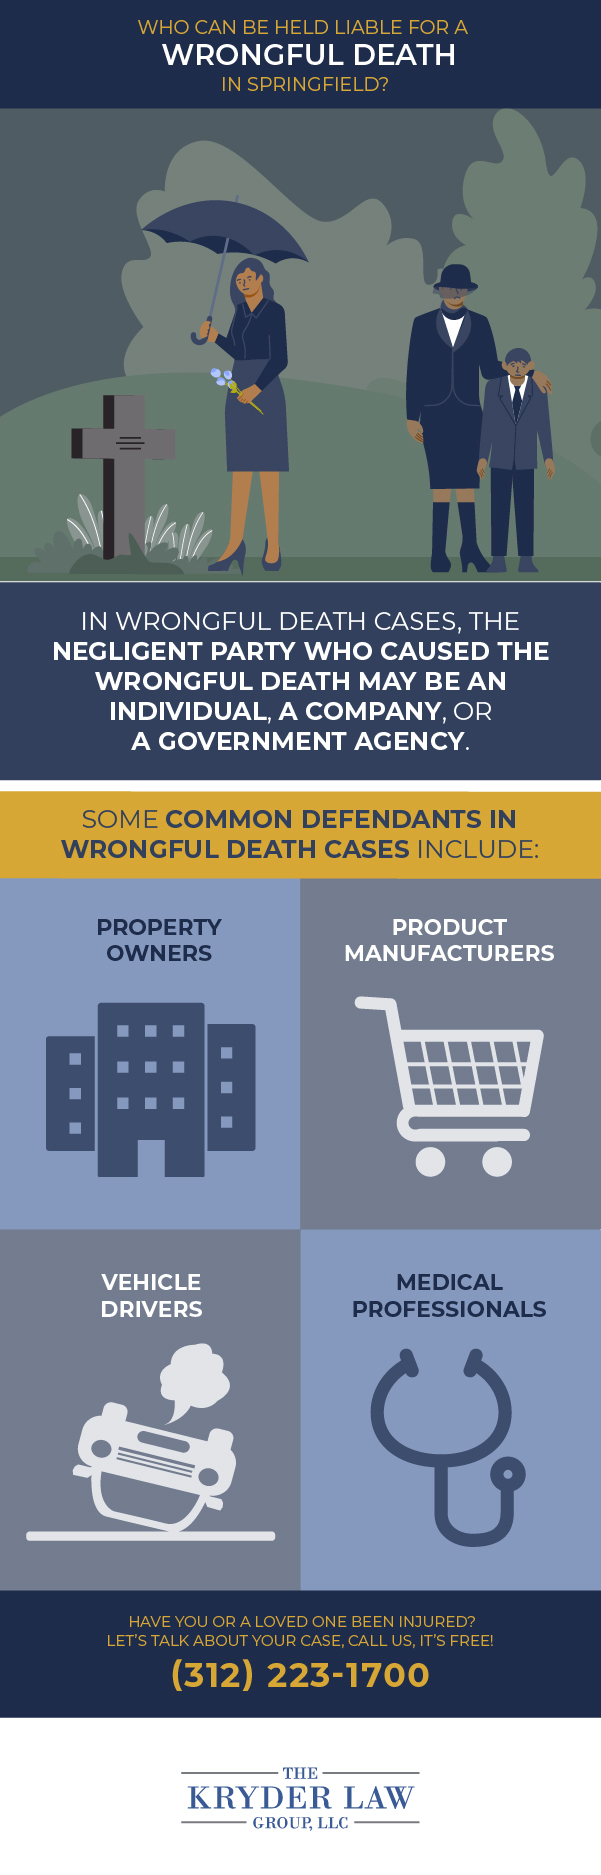 Infografía sobre quién puede ser considerado responsable por una muerte por negligencia en Springfield